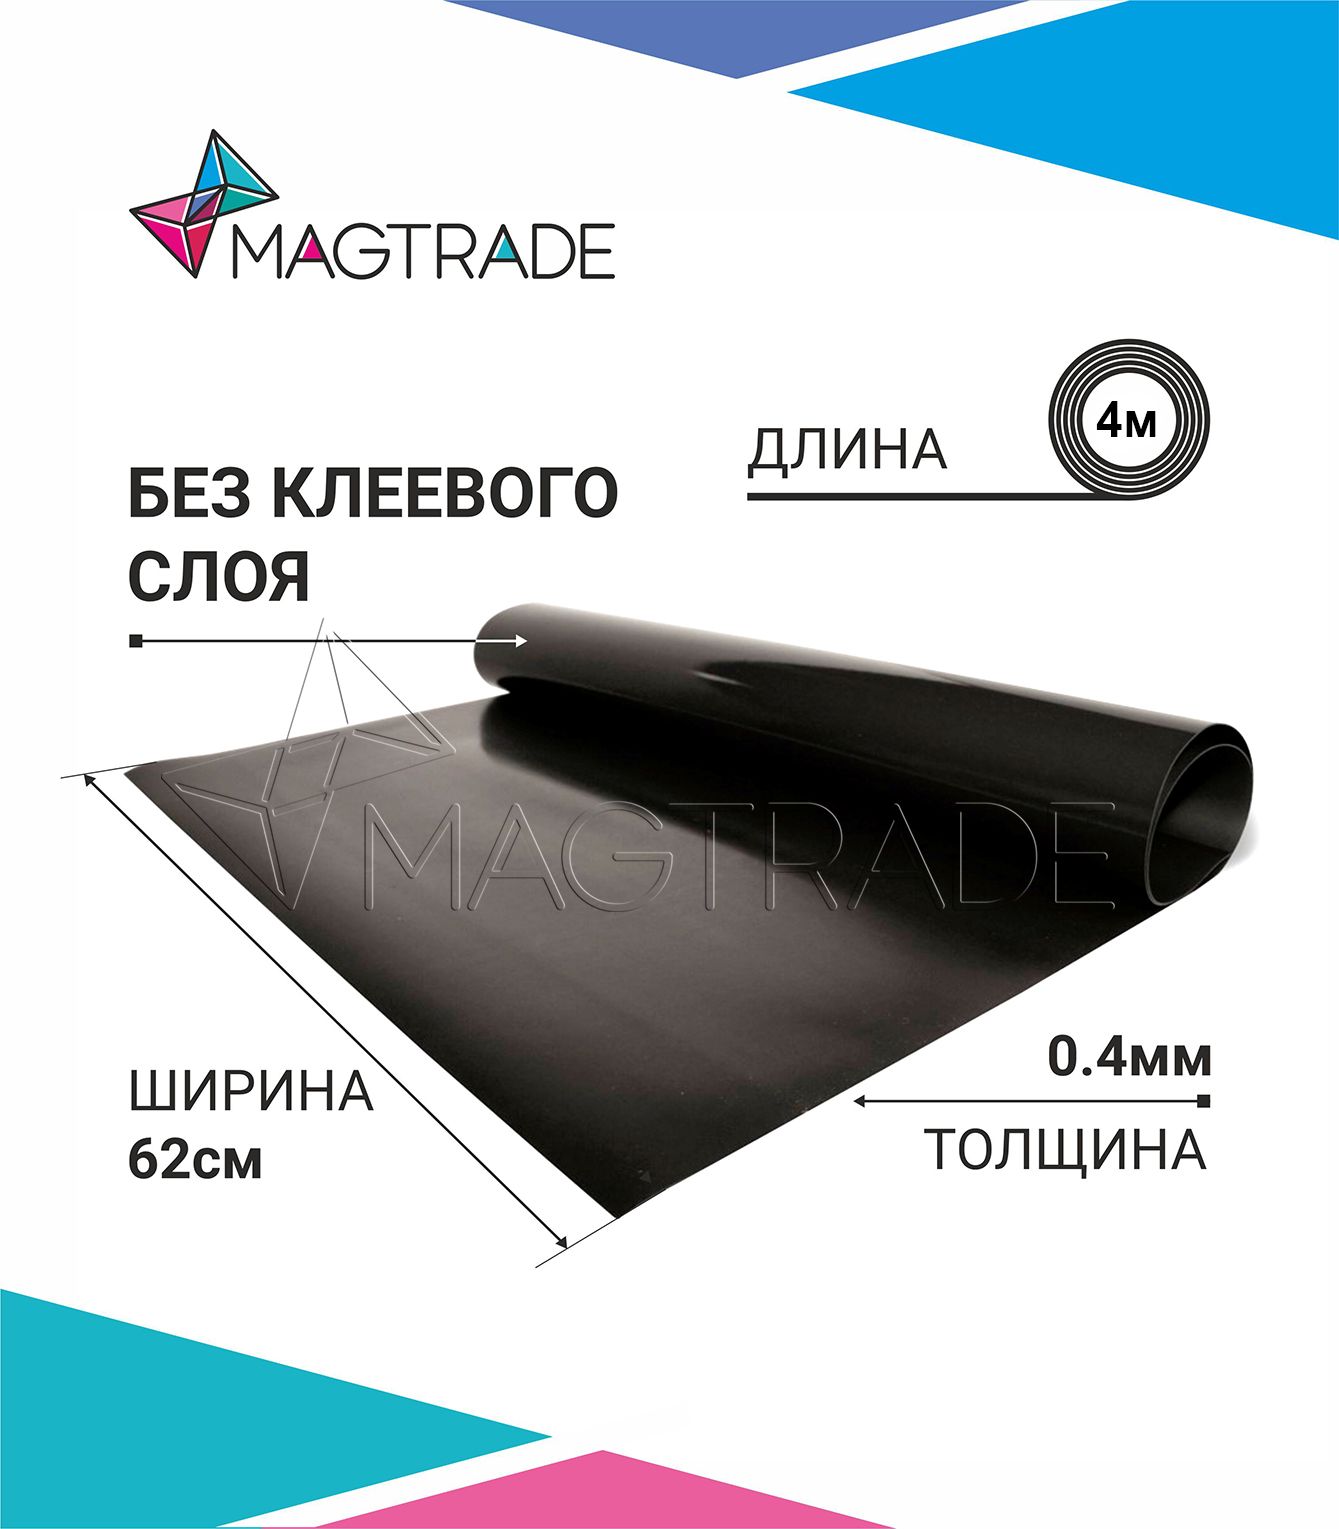 Магнитный винил MAGTRADE без клеевого слоя 0,62 х 4 м, толщина 0,4 мм, лист 4 метра магнитный винил magtrade с клеем толщина 0 9 мм лист 3м